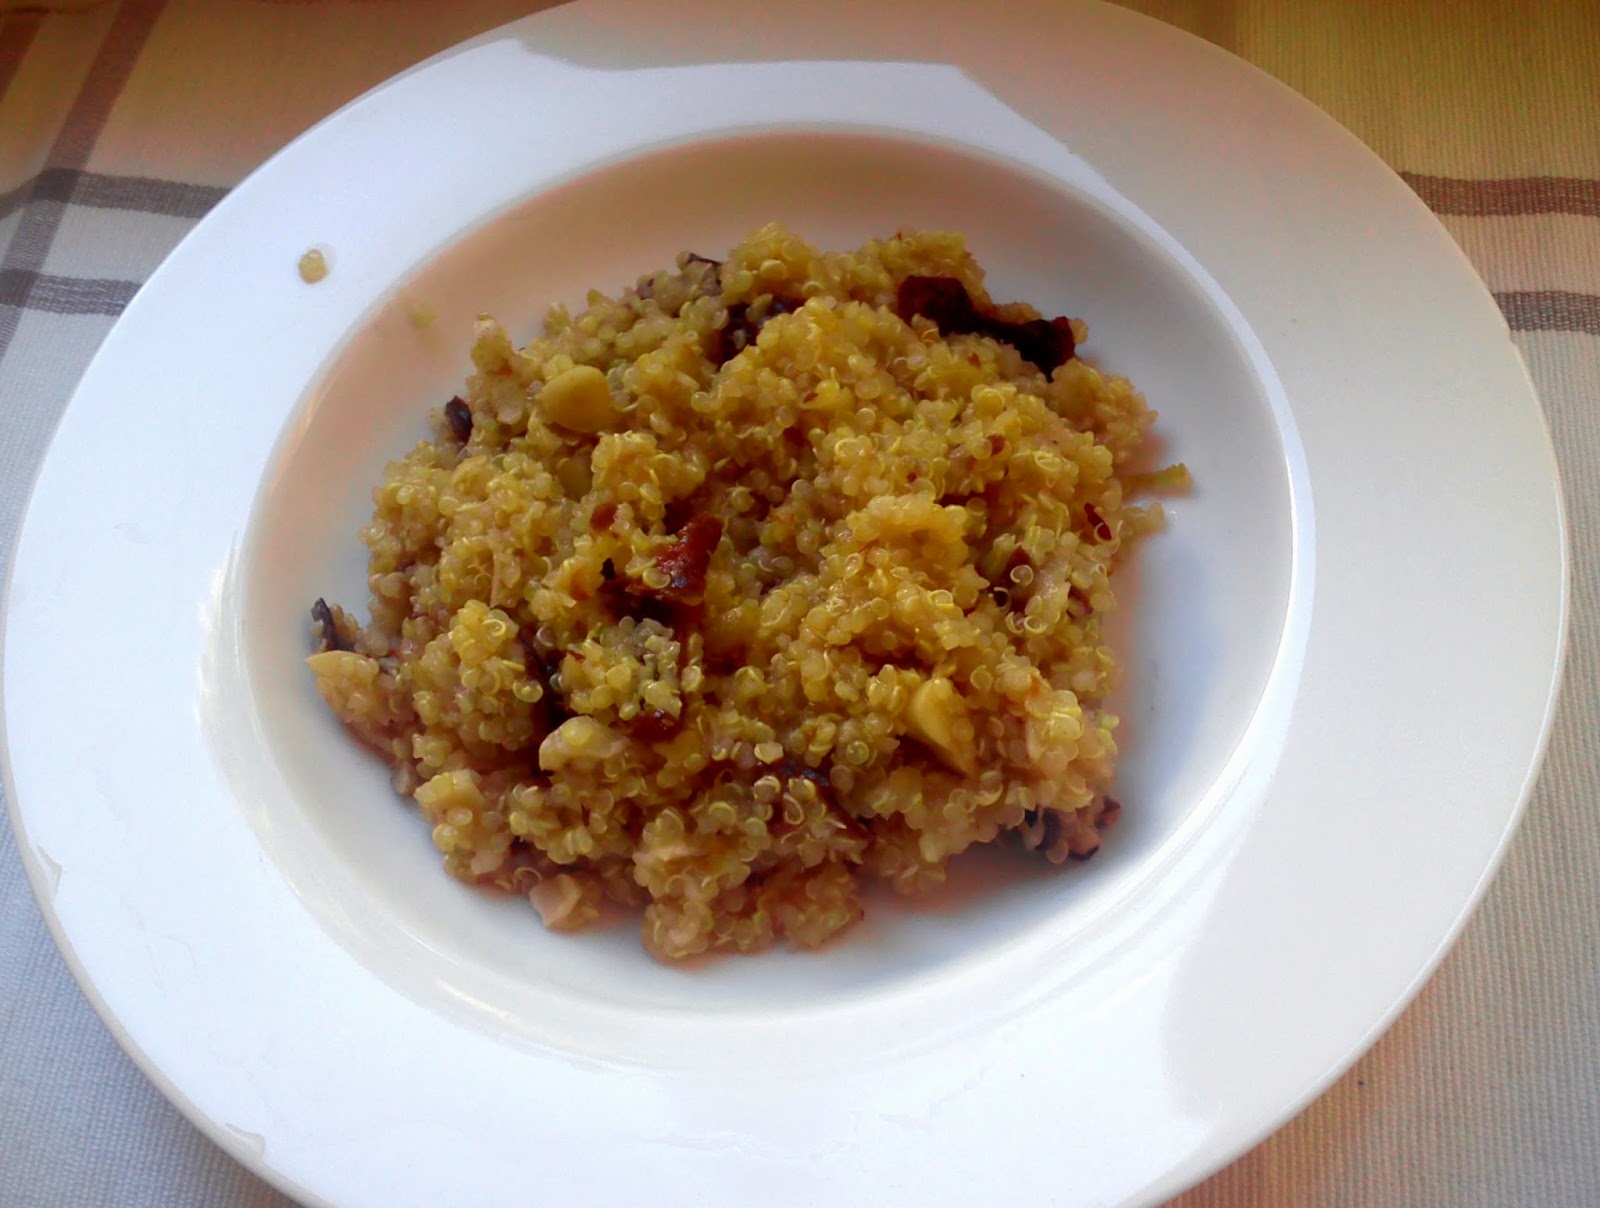 Reseptit: kvinoapuuro mantelimaidon kanssa.